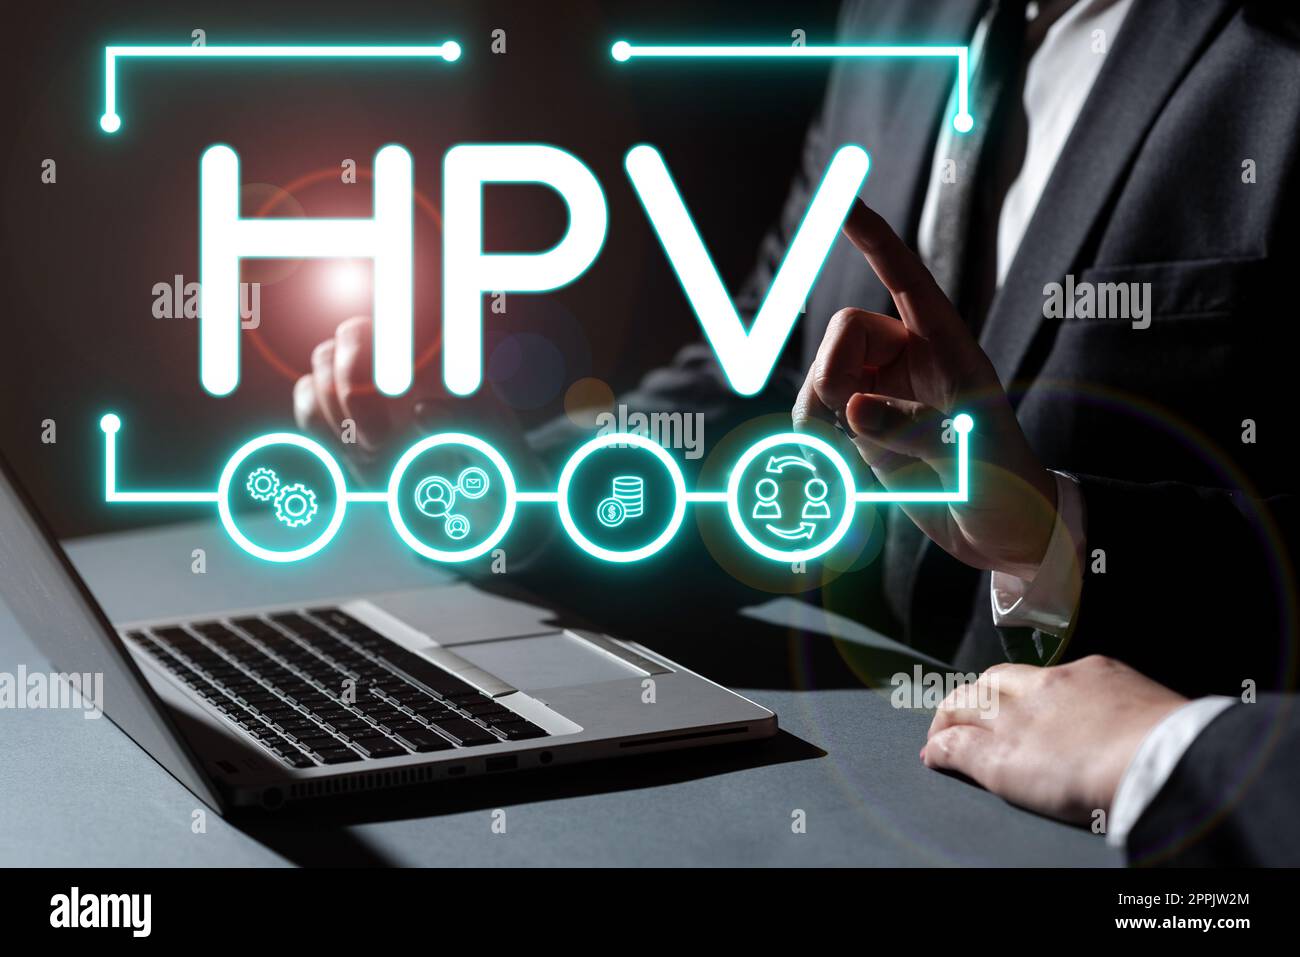 Textbeschriftung zur Darstellung von HPV. Internetkonzept Gruppe von Viren, die Ihre Haut und die feuchten Membranen befallen Stockfoto